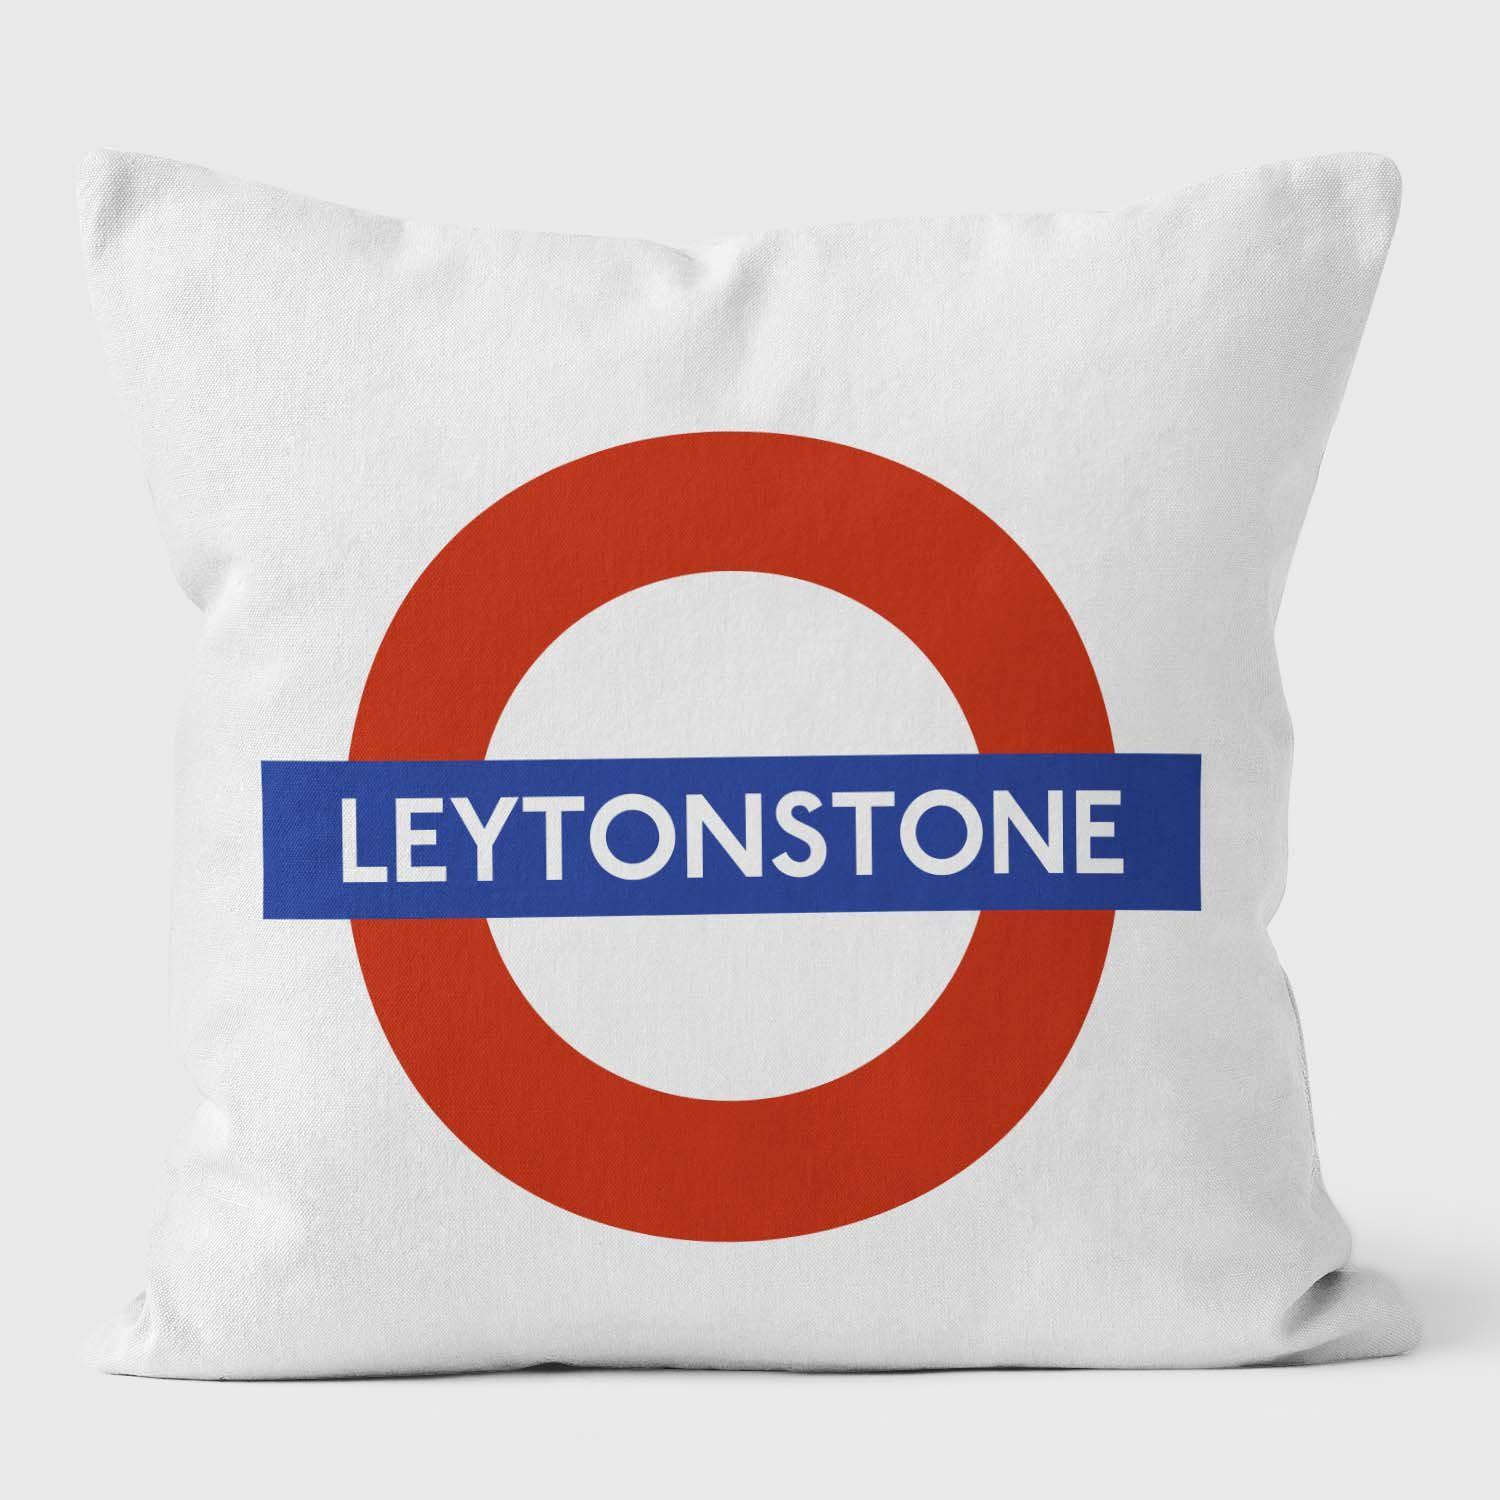 Leytonstone London Underground Tube Station Roundel Cushion - Handmade Cushions UK - WeLoveCushions